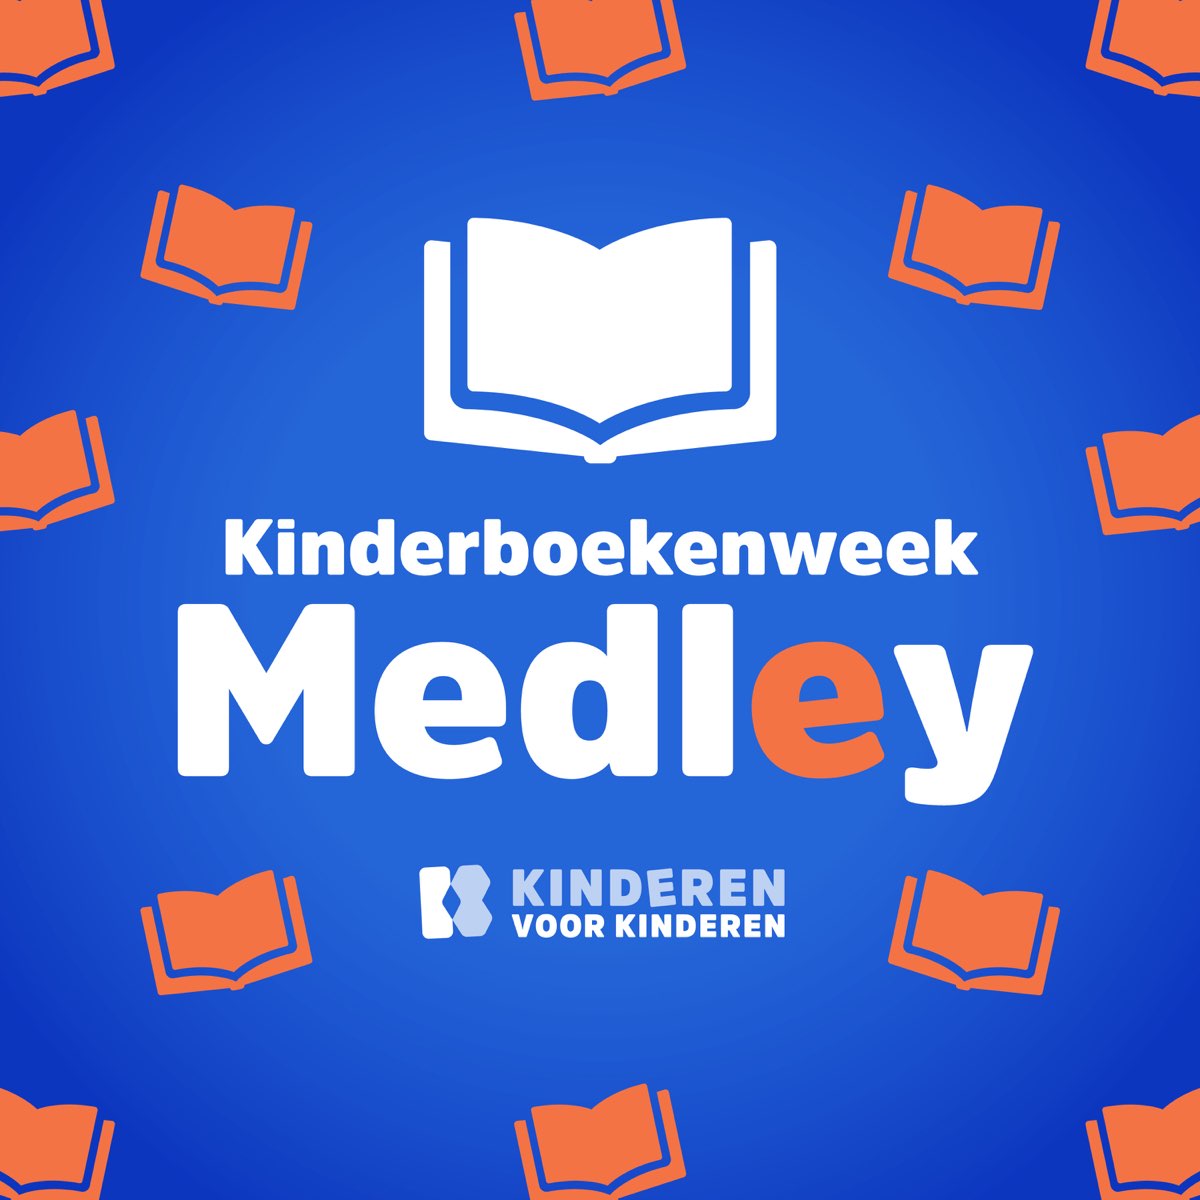 Menstruatie Verder weekend Kinderboekenweek Medley - Single by Kinderen Voor Kinderen on Apple Music